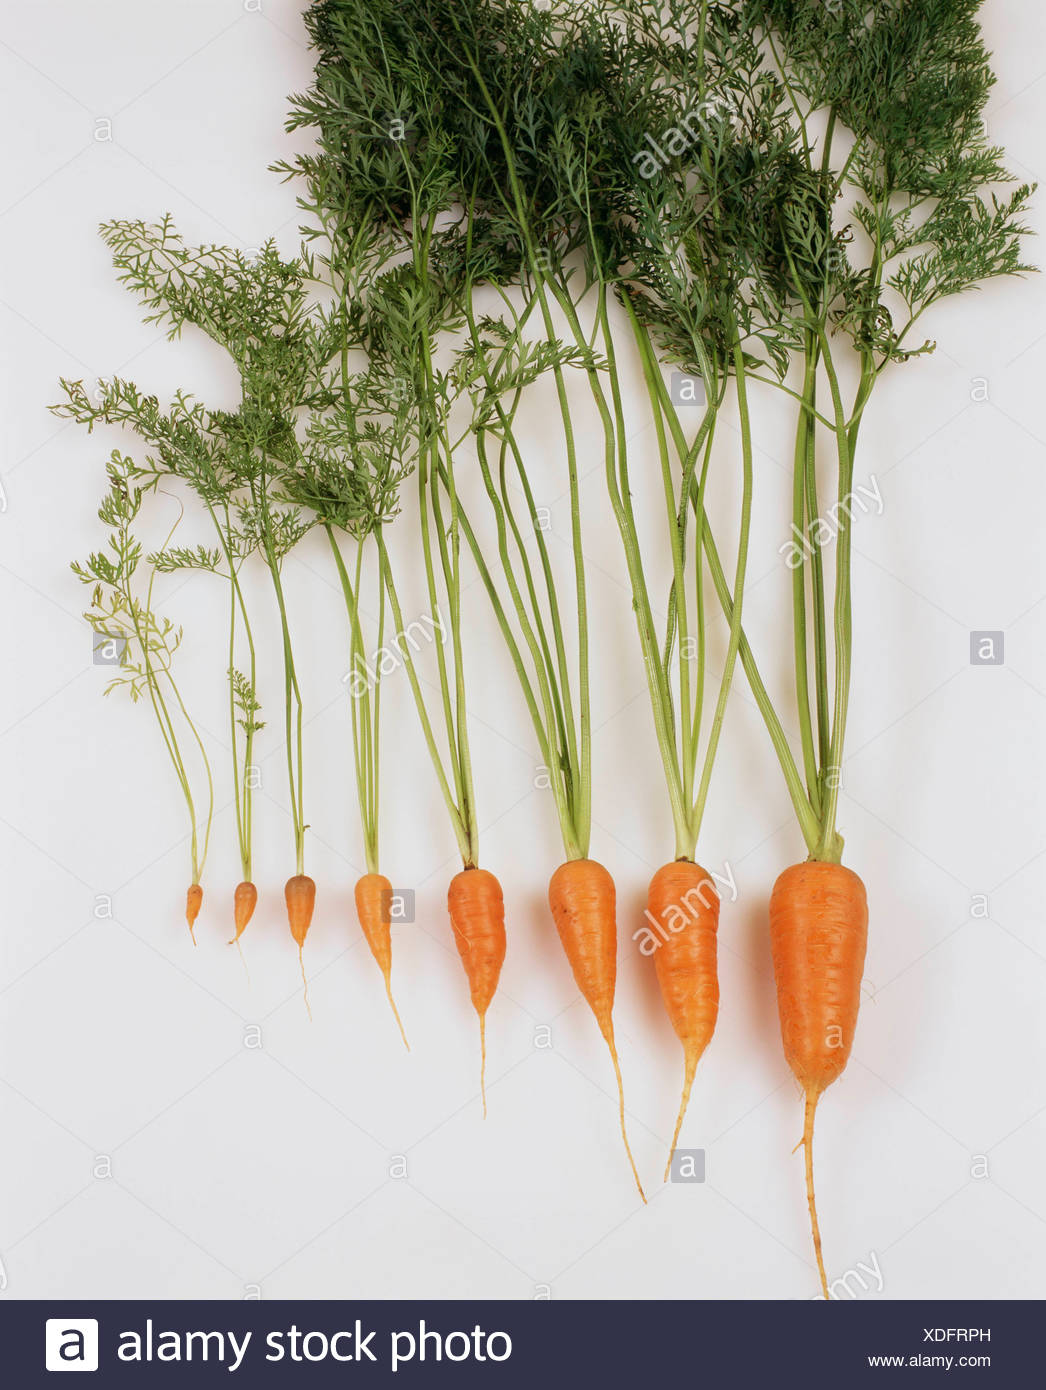 3 week old carrot seedlings